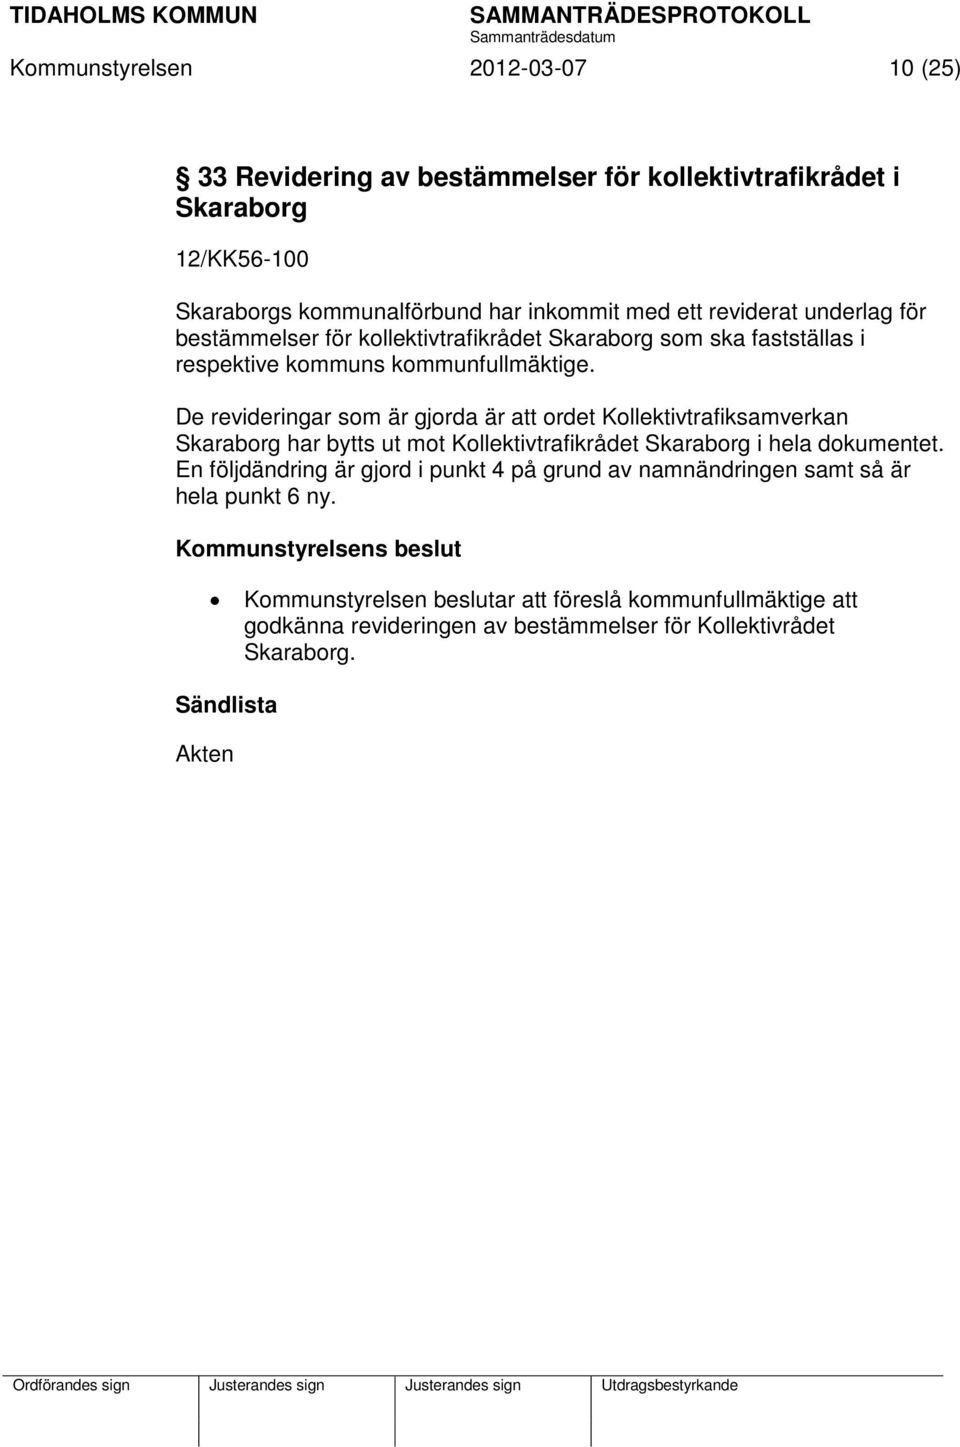 De revideringar som är gjorda är att ordet Kollektivtrafiksamverkan Skaraborg har bytts ut mot Kollektivtrafikrådet Skaraborg i hela dokumentet.